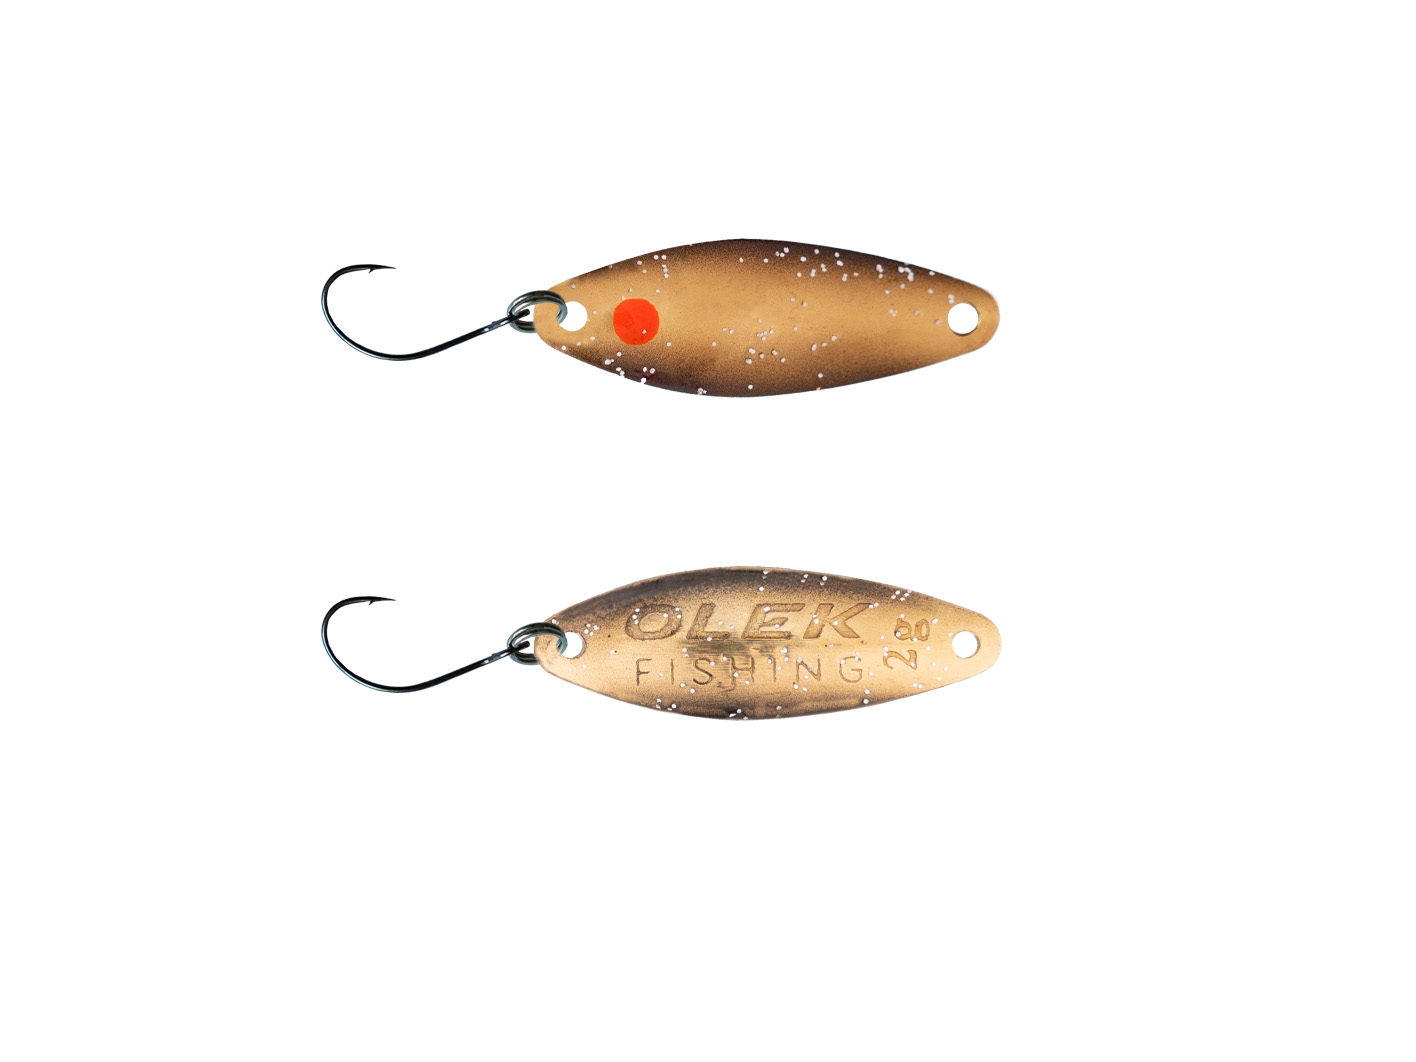 Olek-Fishing Volma Spoon Zum Forellenfischen | Sonderfarbe | Gewicht: 2,0 Gr. | Farbe: Golden Fly